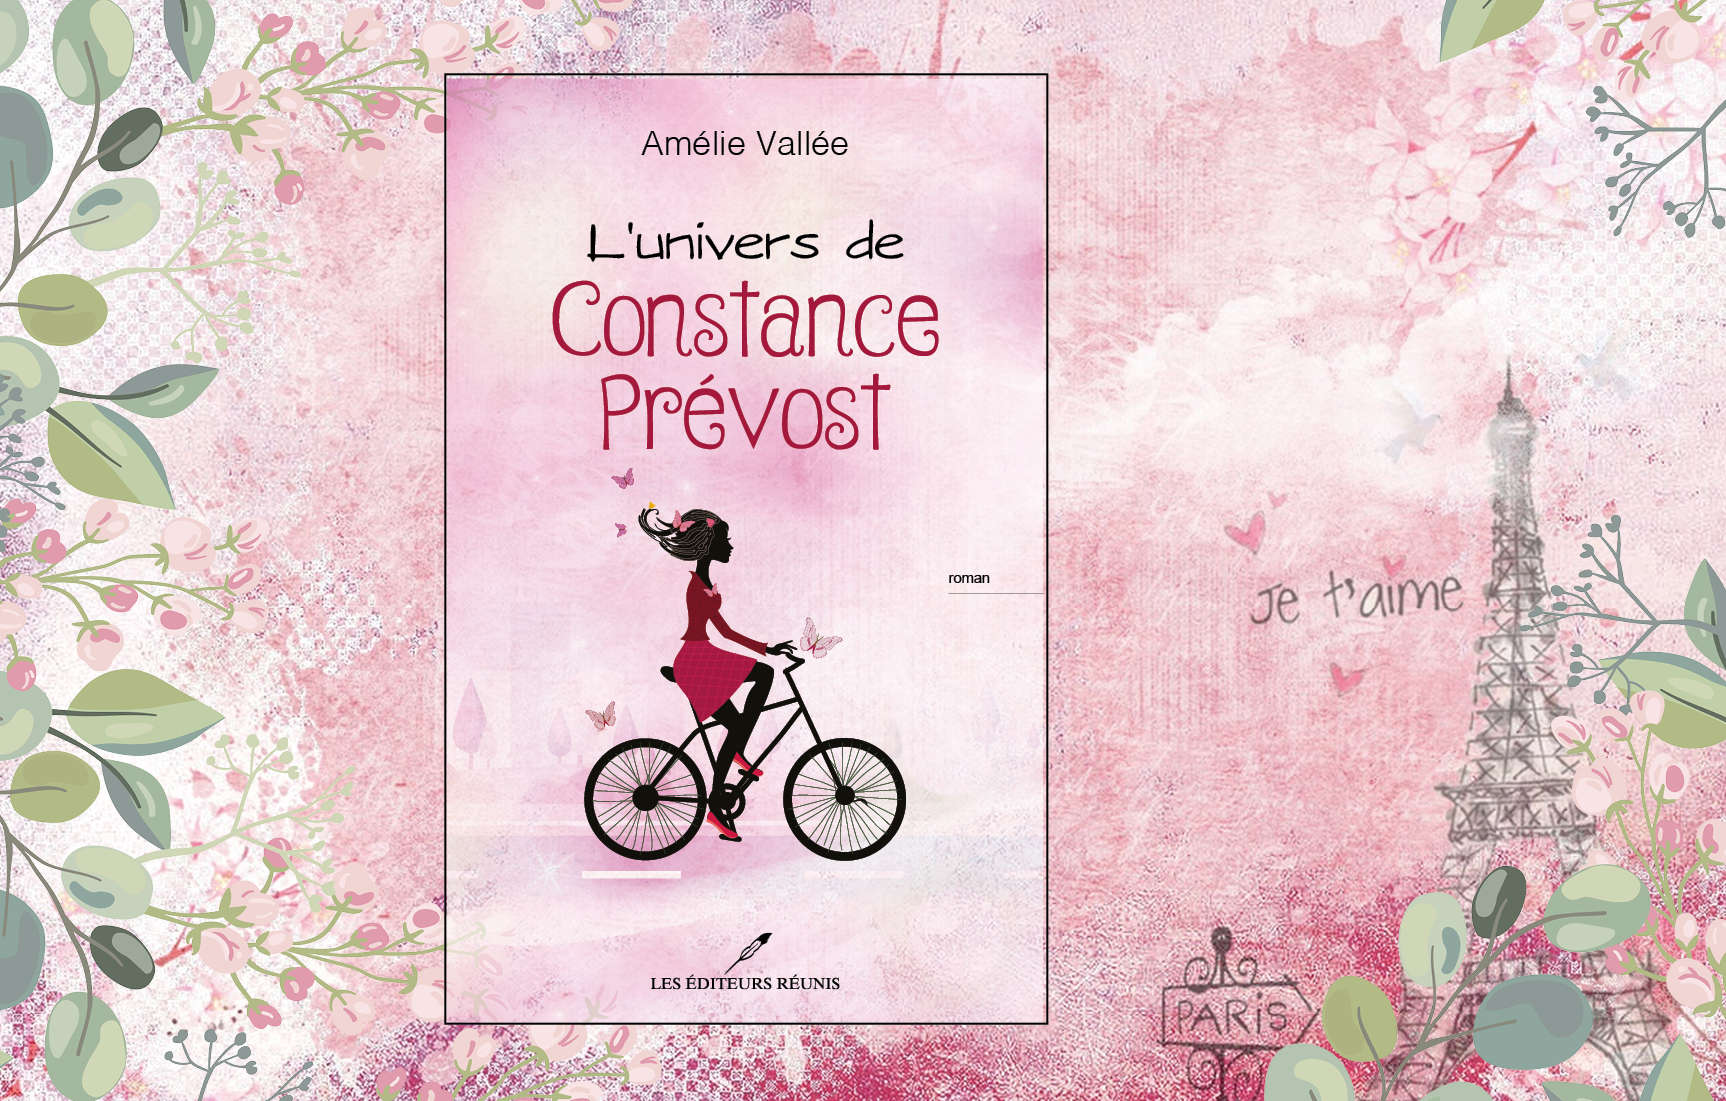 FOND JUST FOCUS Un livre entraînant empli de bonnes intentions : la vie débordante de Constance Prévost